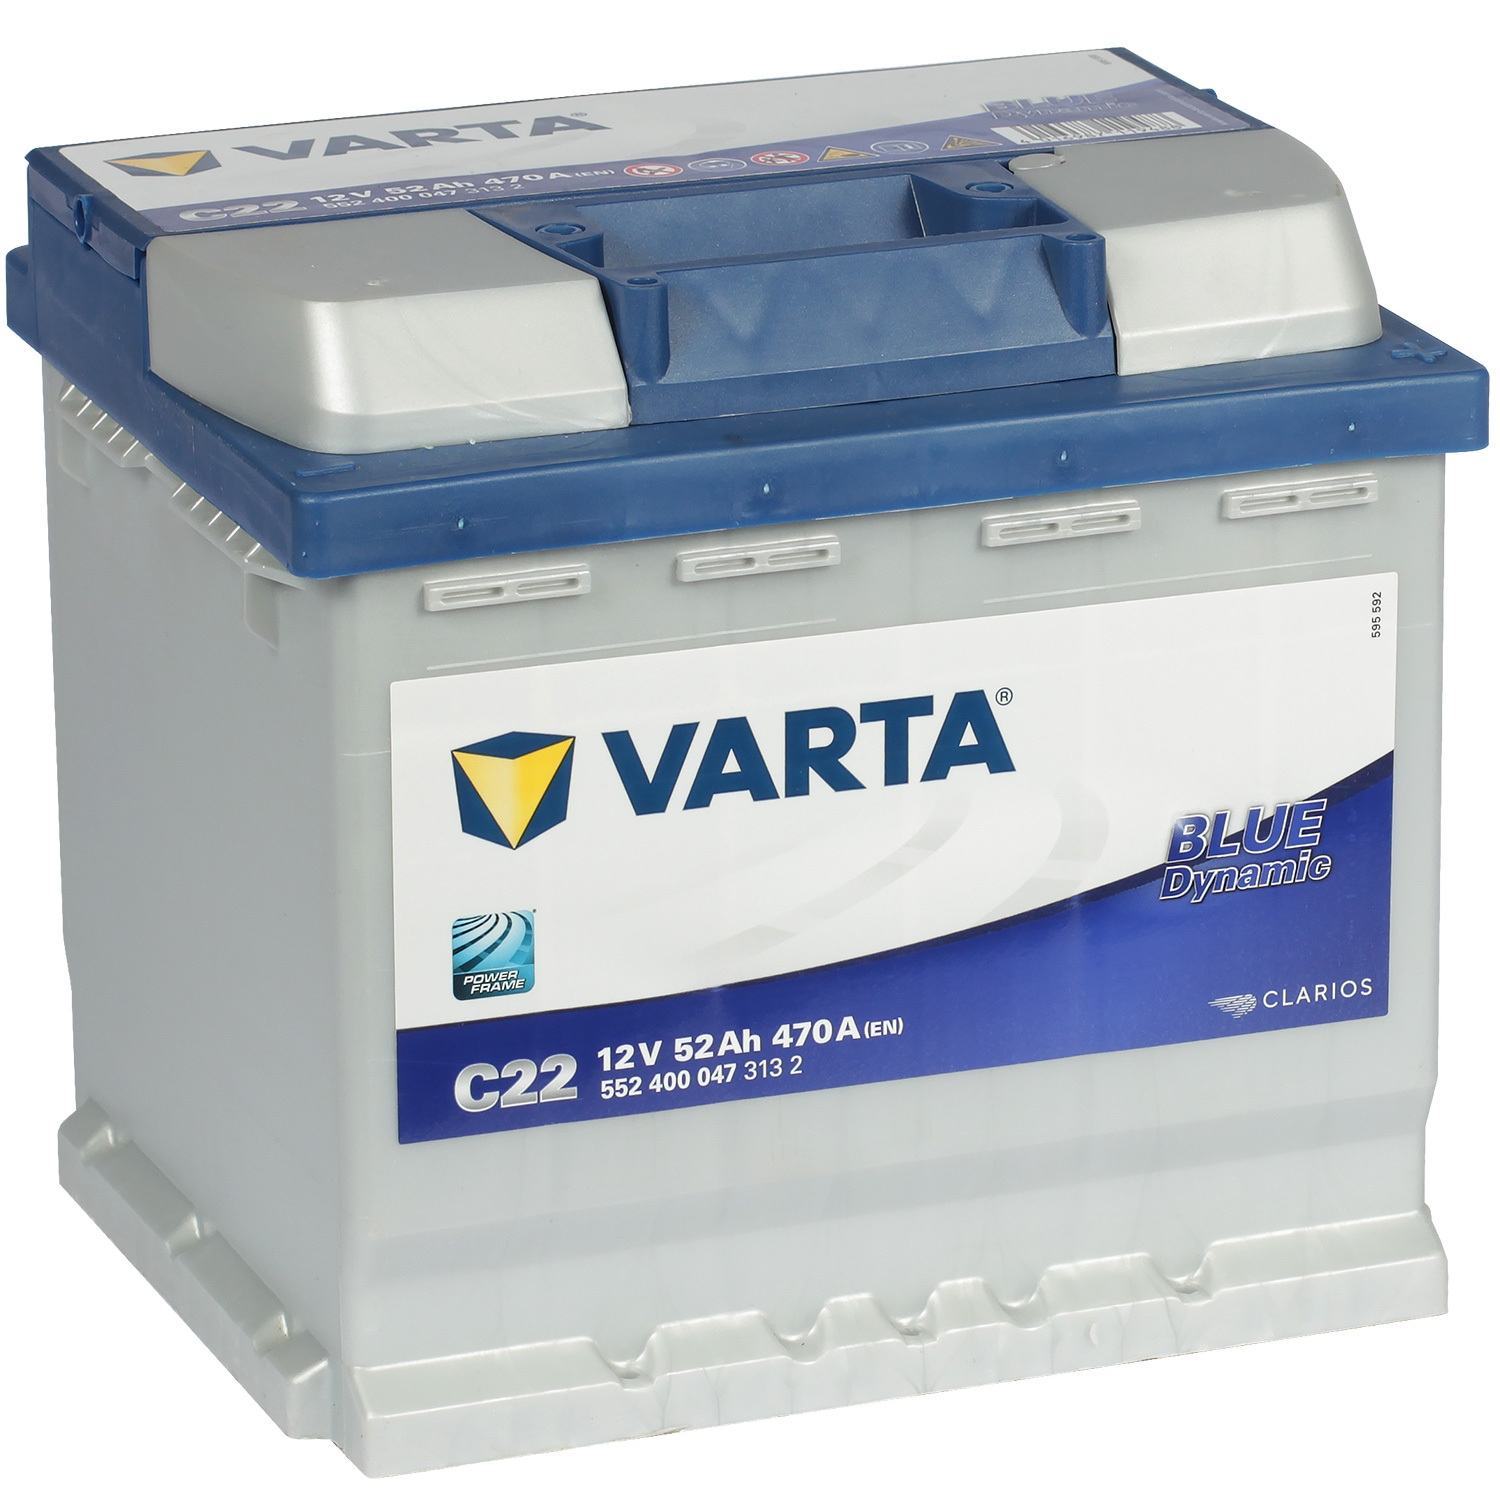 Varta Автомобильный аккумулятор Varta Blue Dynamic C22 52 Ач обратная полярность L1 varta автомобильный аккумулятор varta 80 ач обратная полярность l4